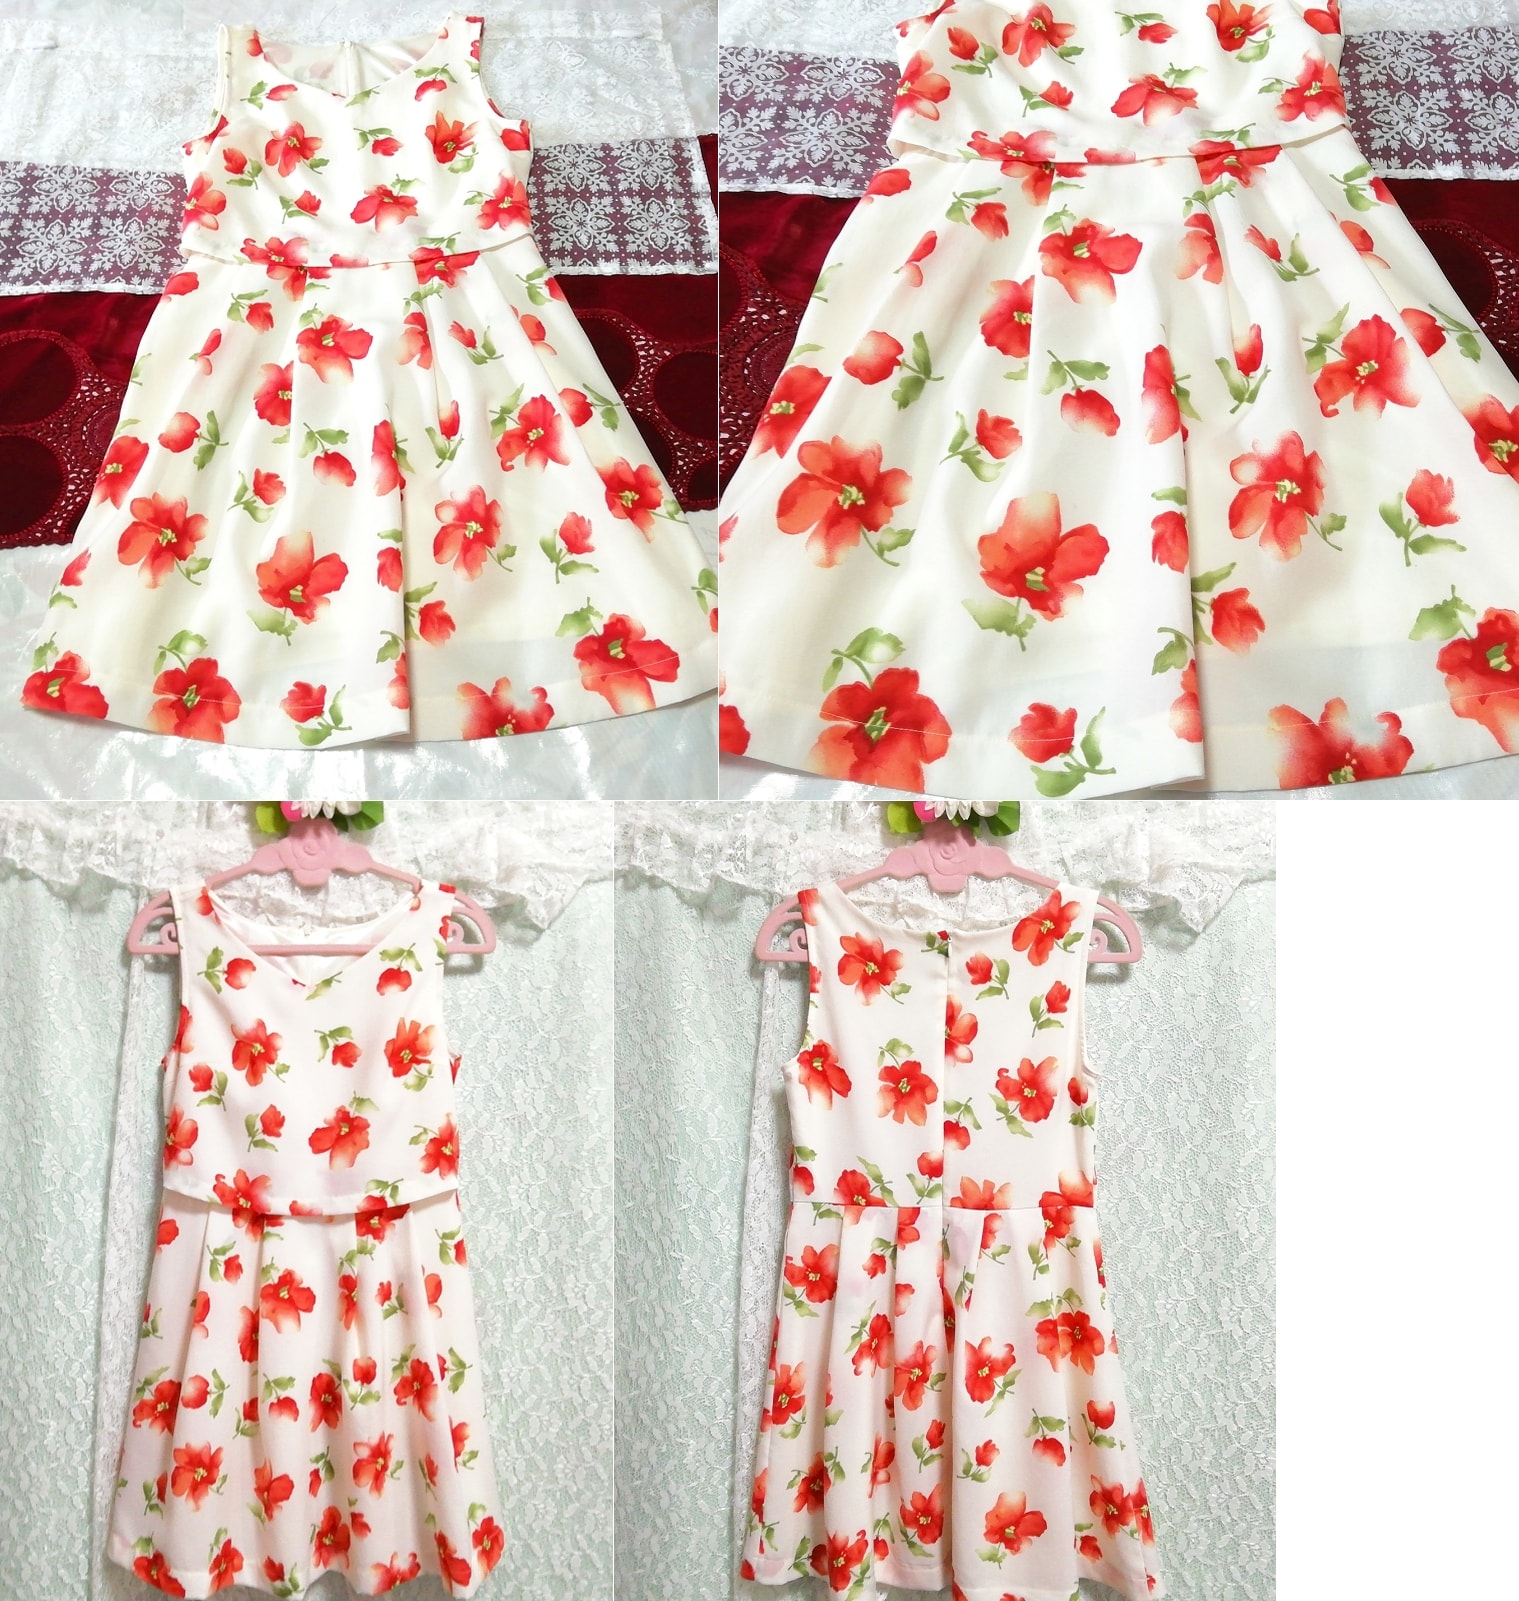 Ärmelloses Negligé-Nachthemd aus Chiffon mit Blumenmuster in Weiß, Rot, Grün und Blumenmuster, Minikleid, Minirock, Größe m